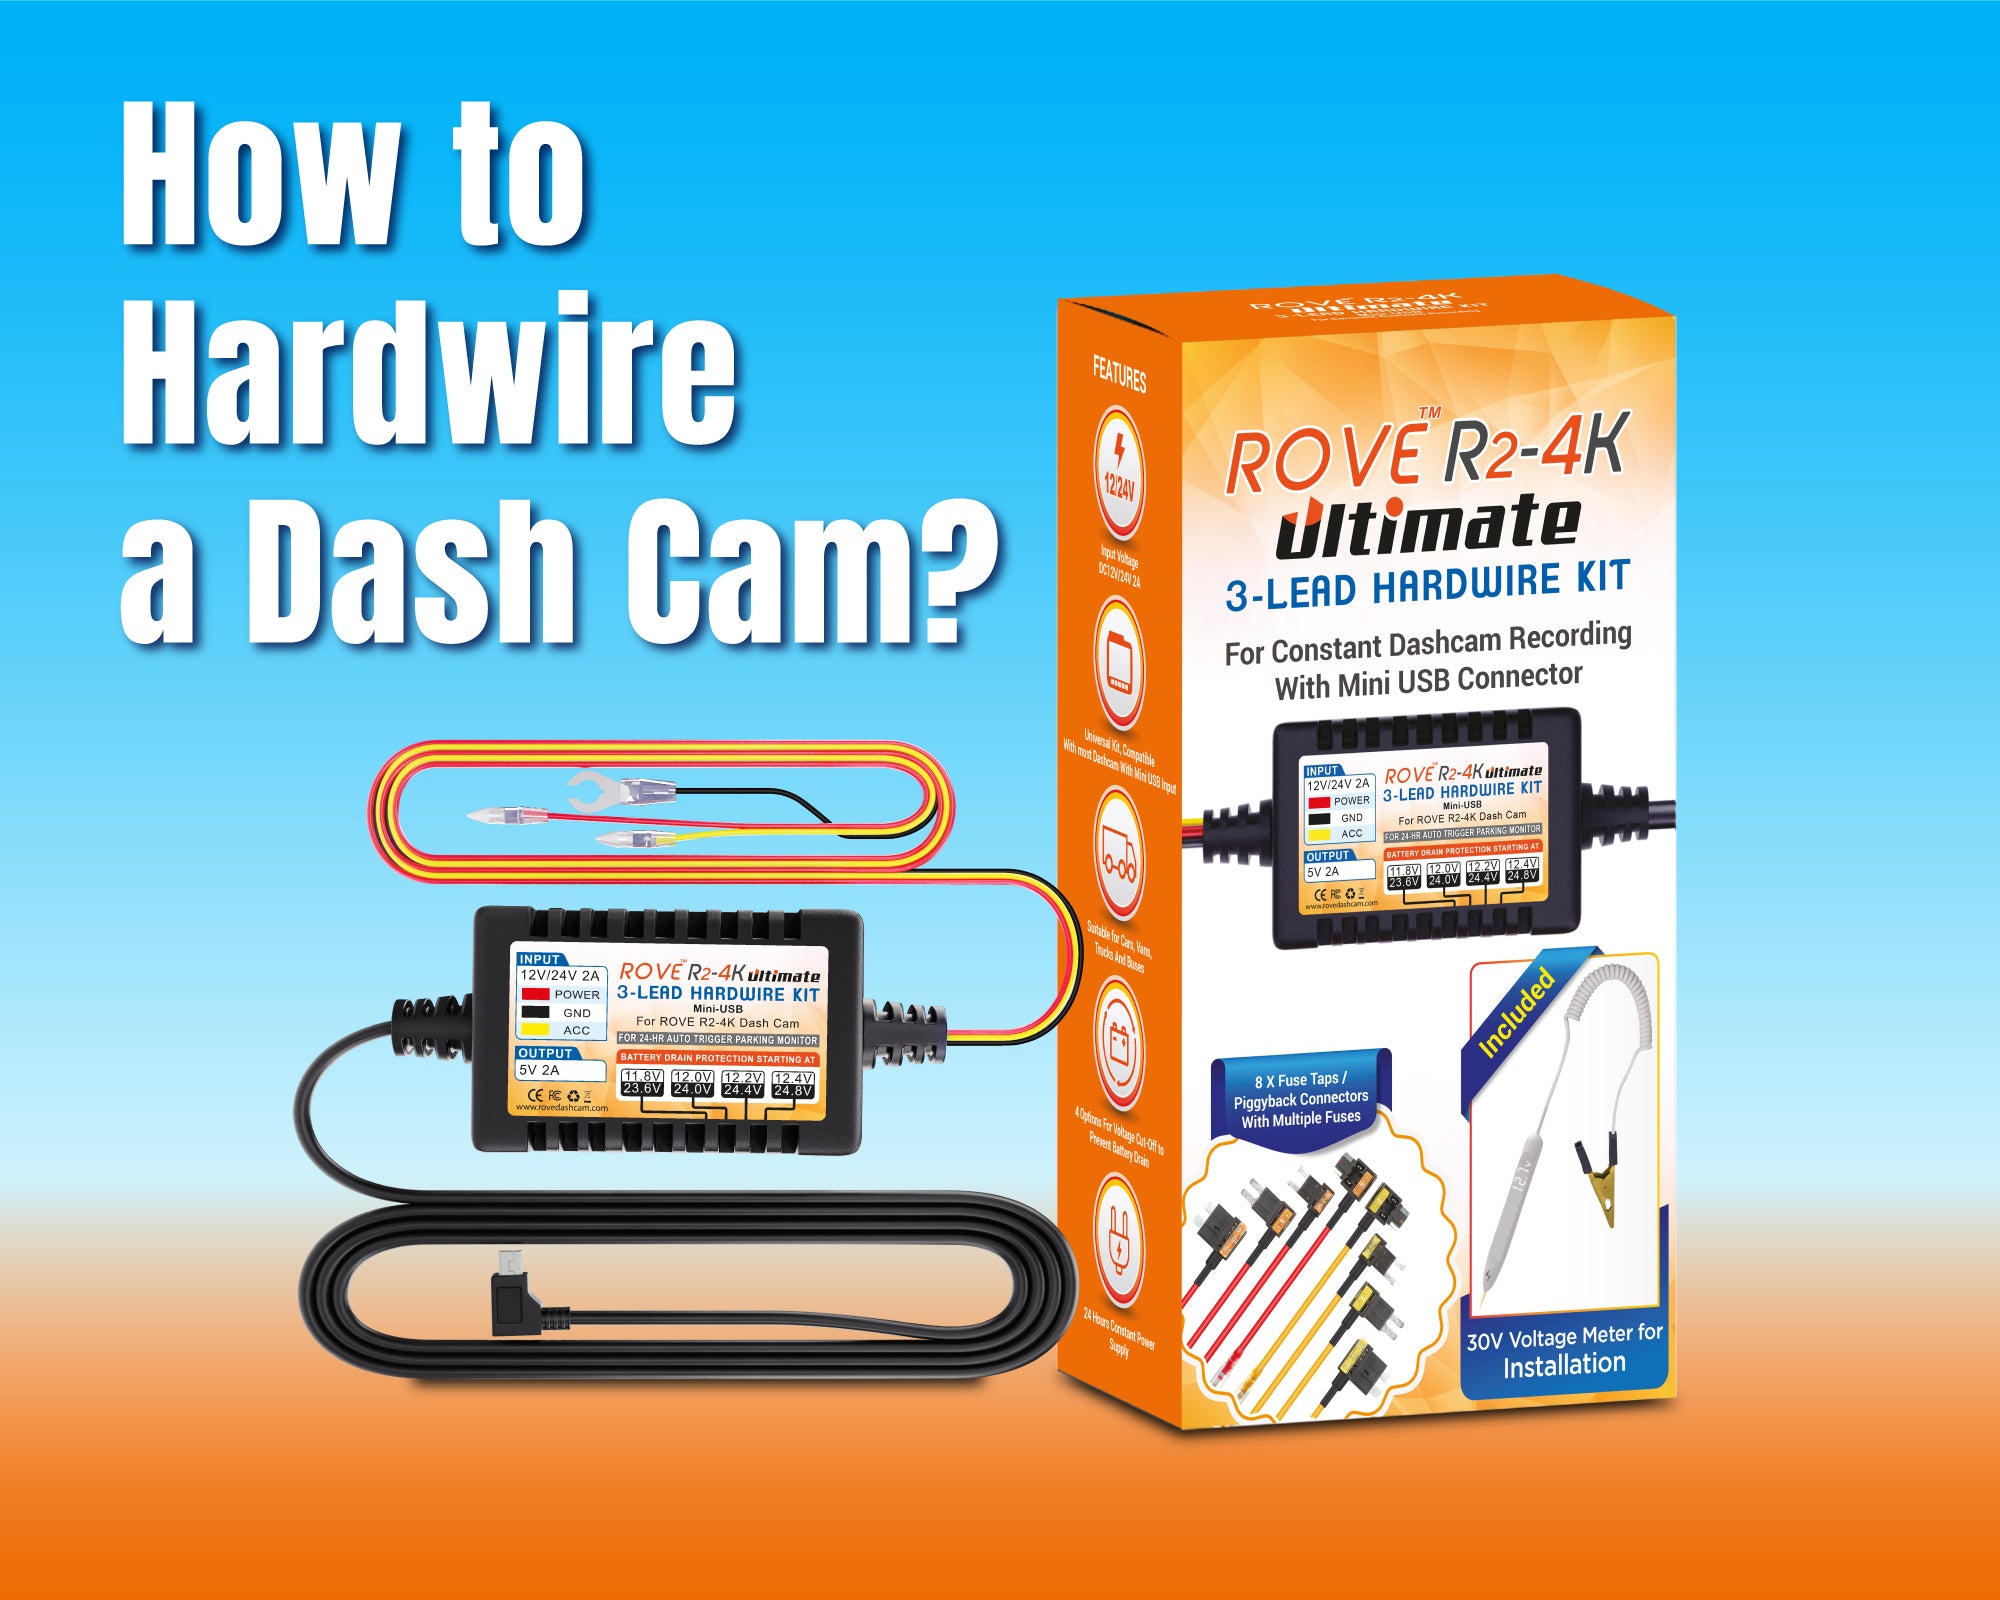 http://www.rovedashcam.com/cdn/shop/articles/How-to-hardwire-a-dash-cam.jpg?v=1701894553